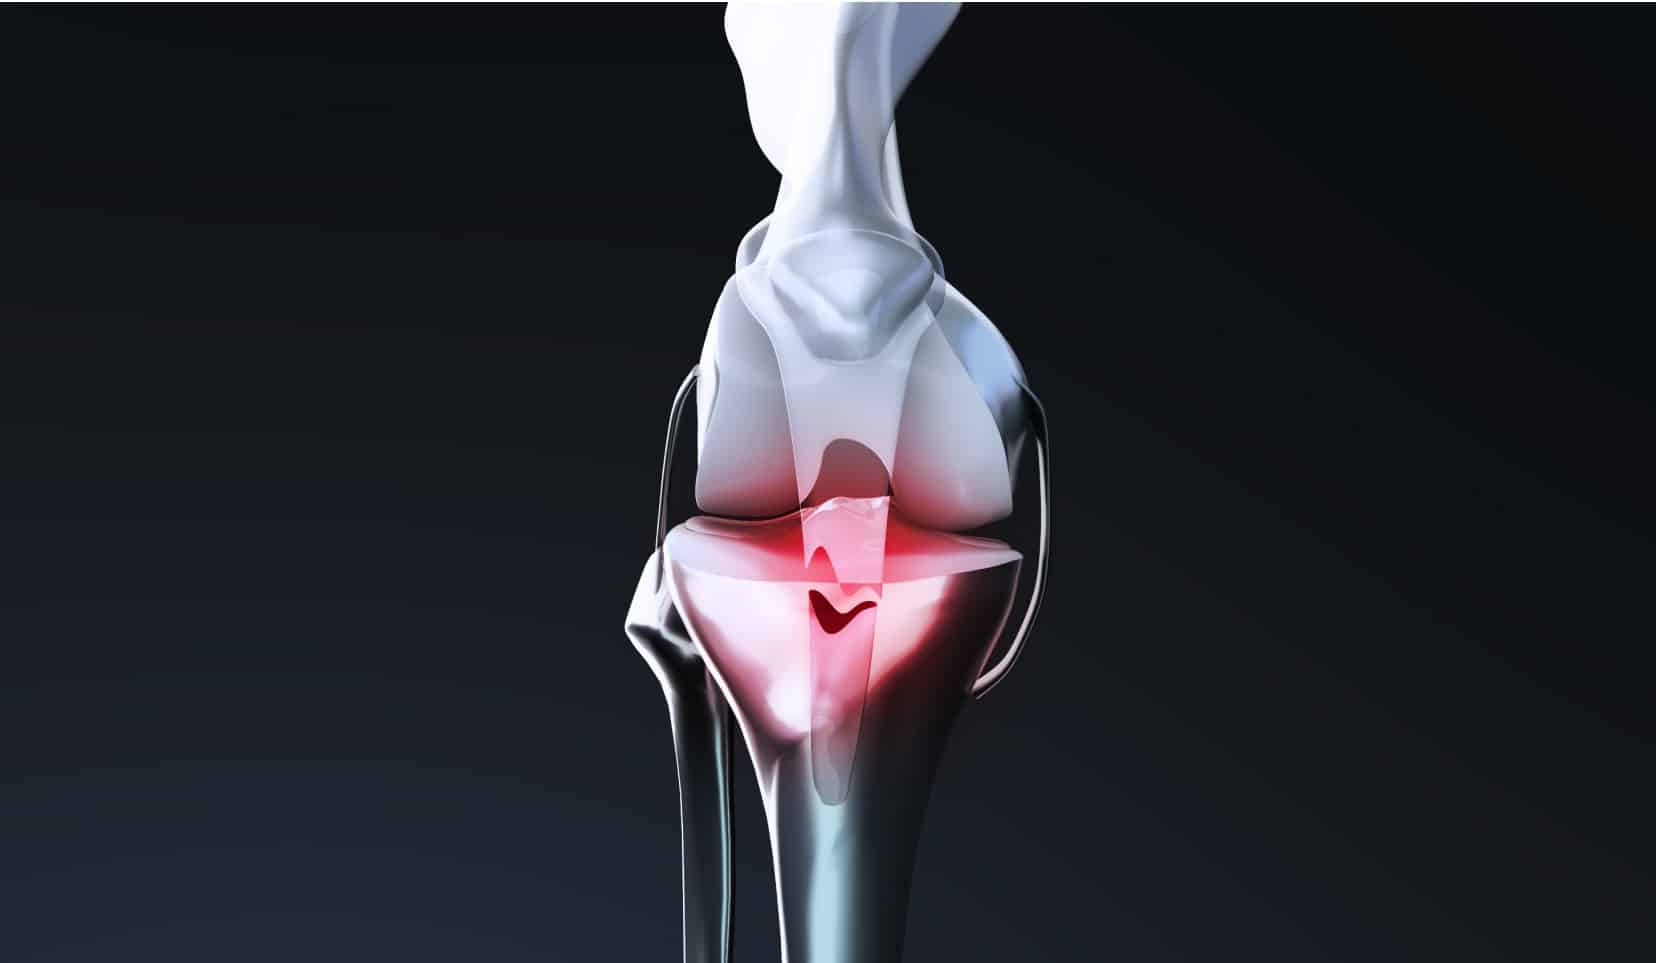 Traitement de la rupture du tendon rotulien | operation tendon rotulien | Bois-Guillaume | Dr Polle